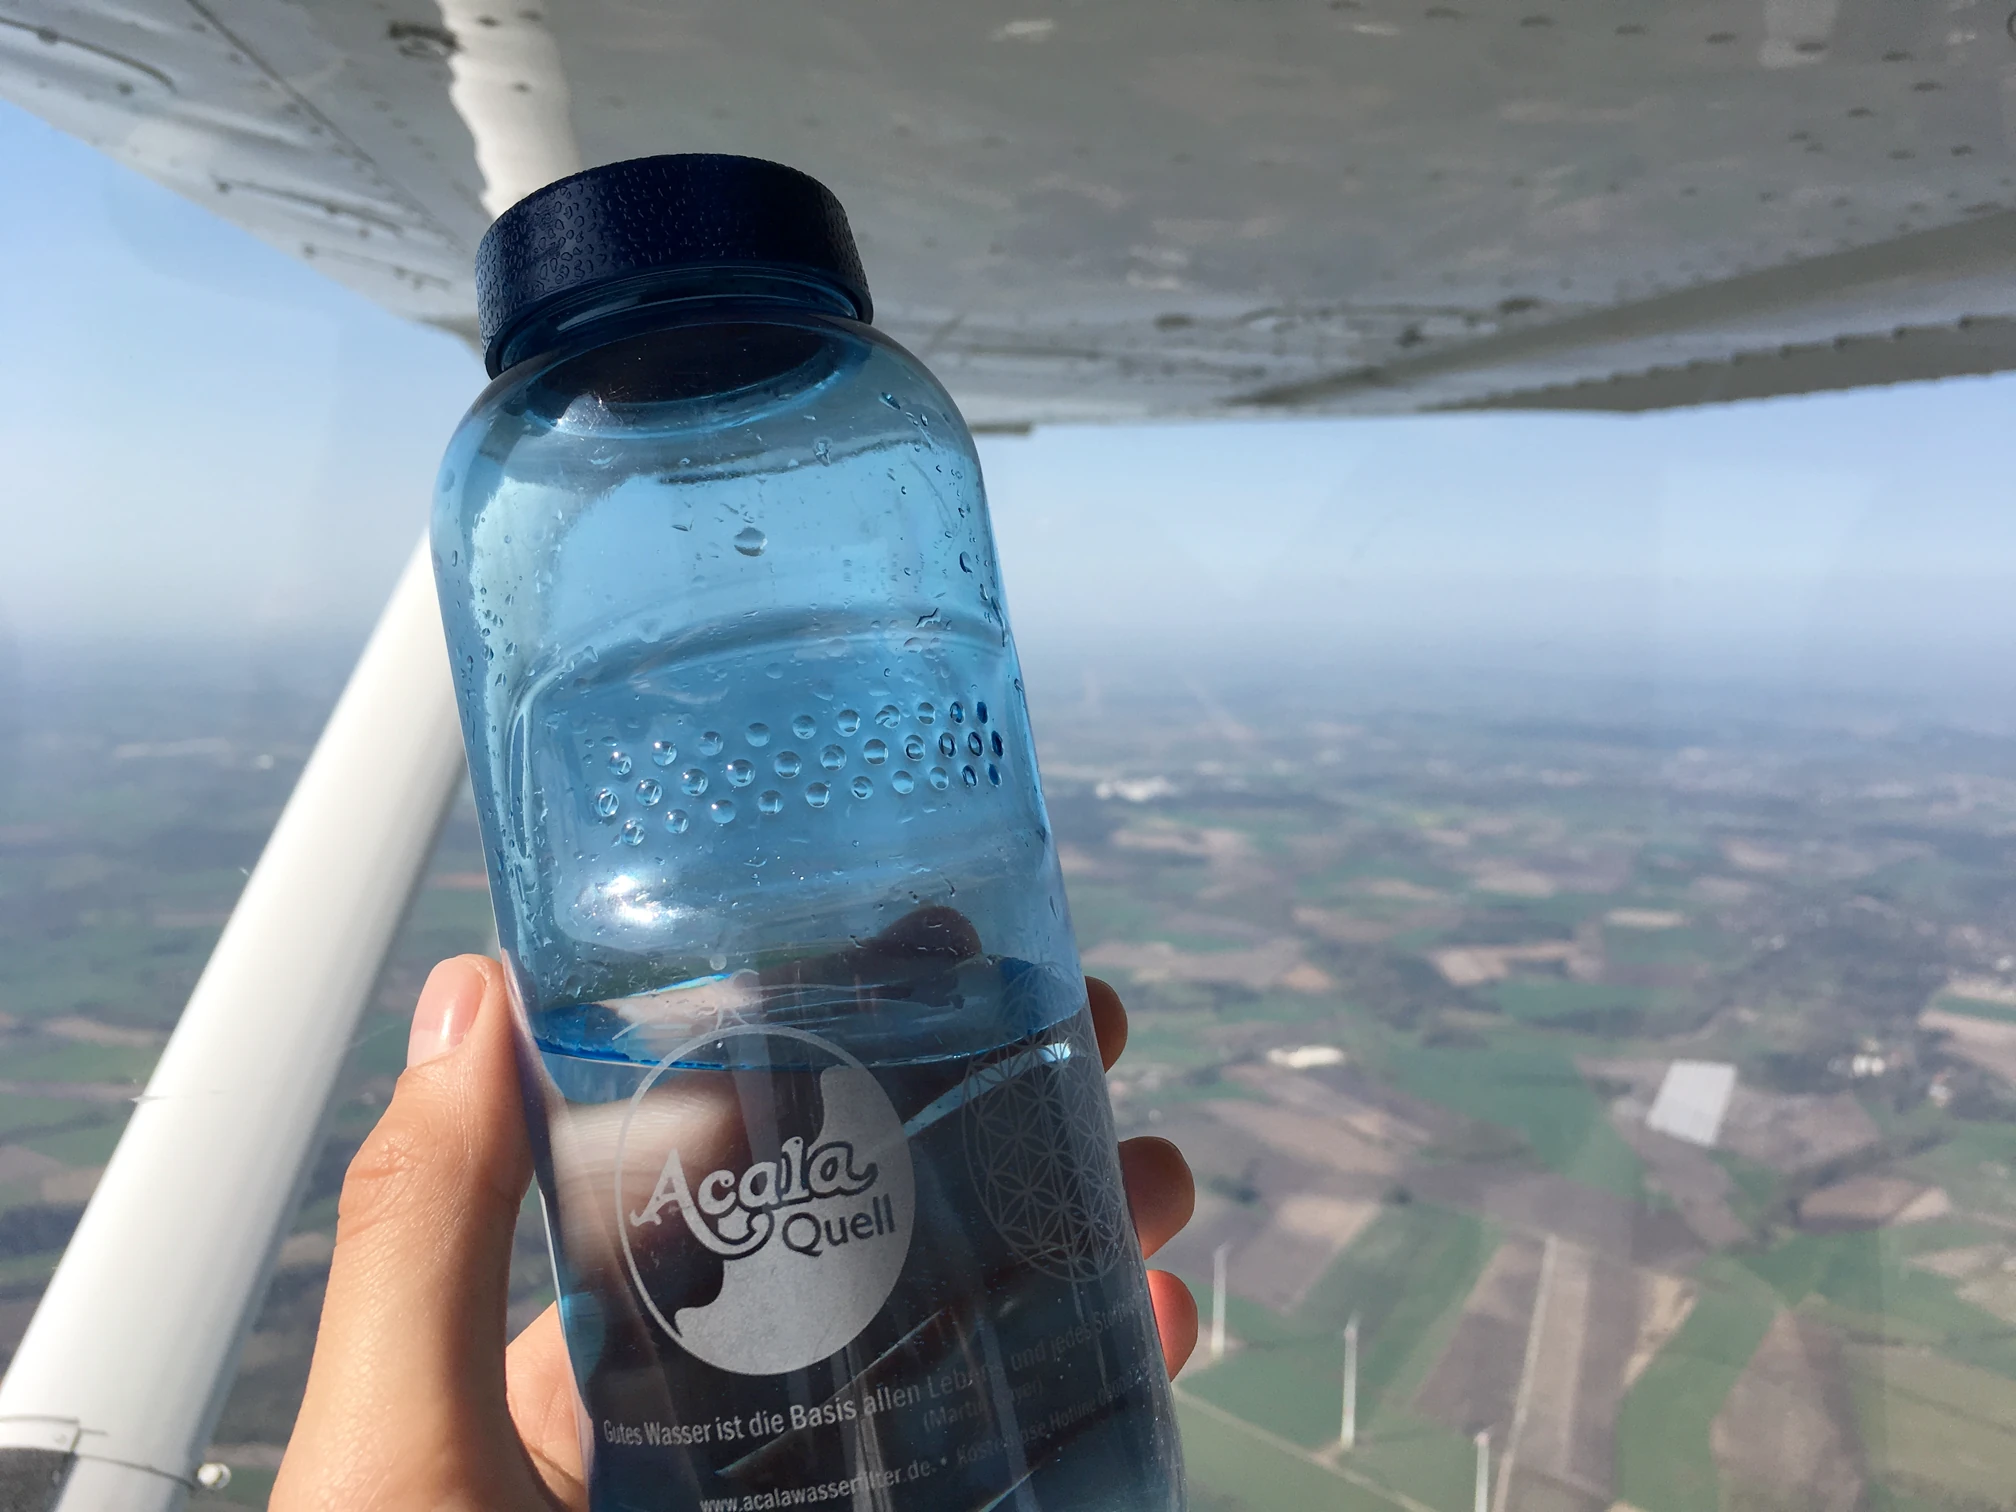 Tritanflasche in einer Hand die vor einem Fenster im Flugzeug ist und man sieht die Landaschaft aus dem Flugzeug